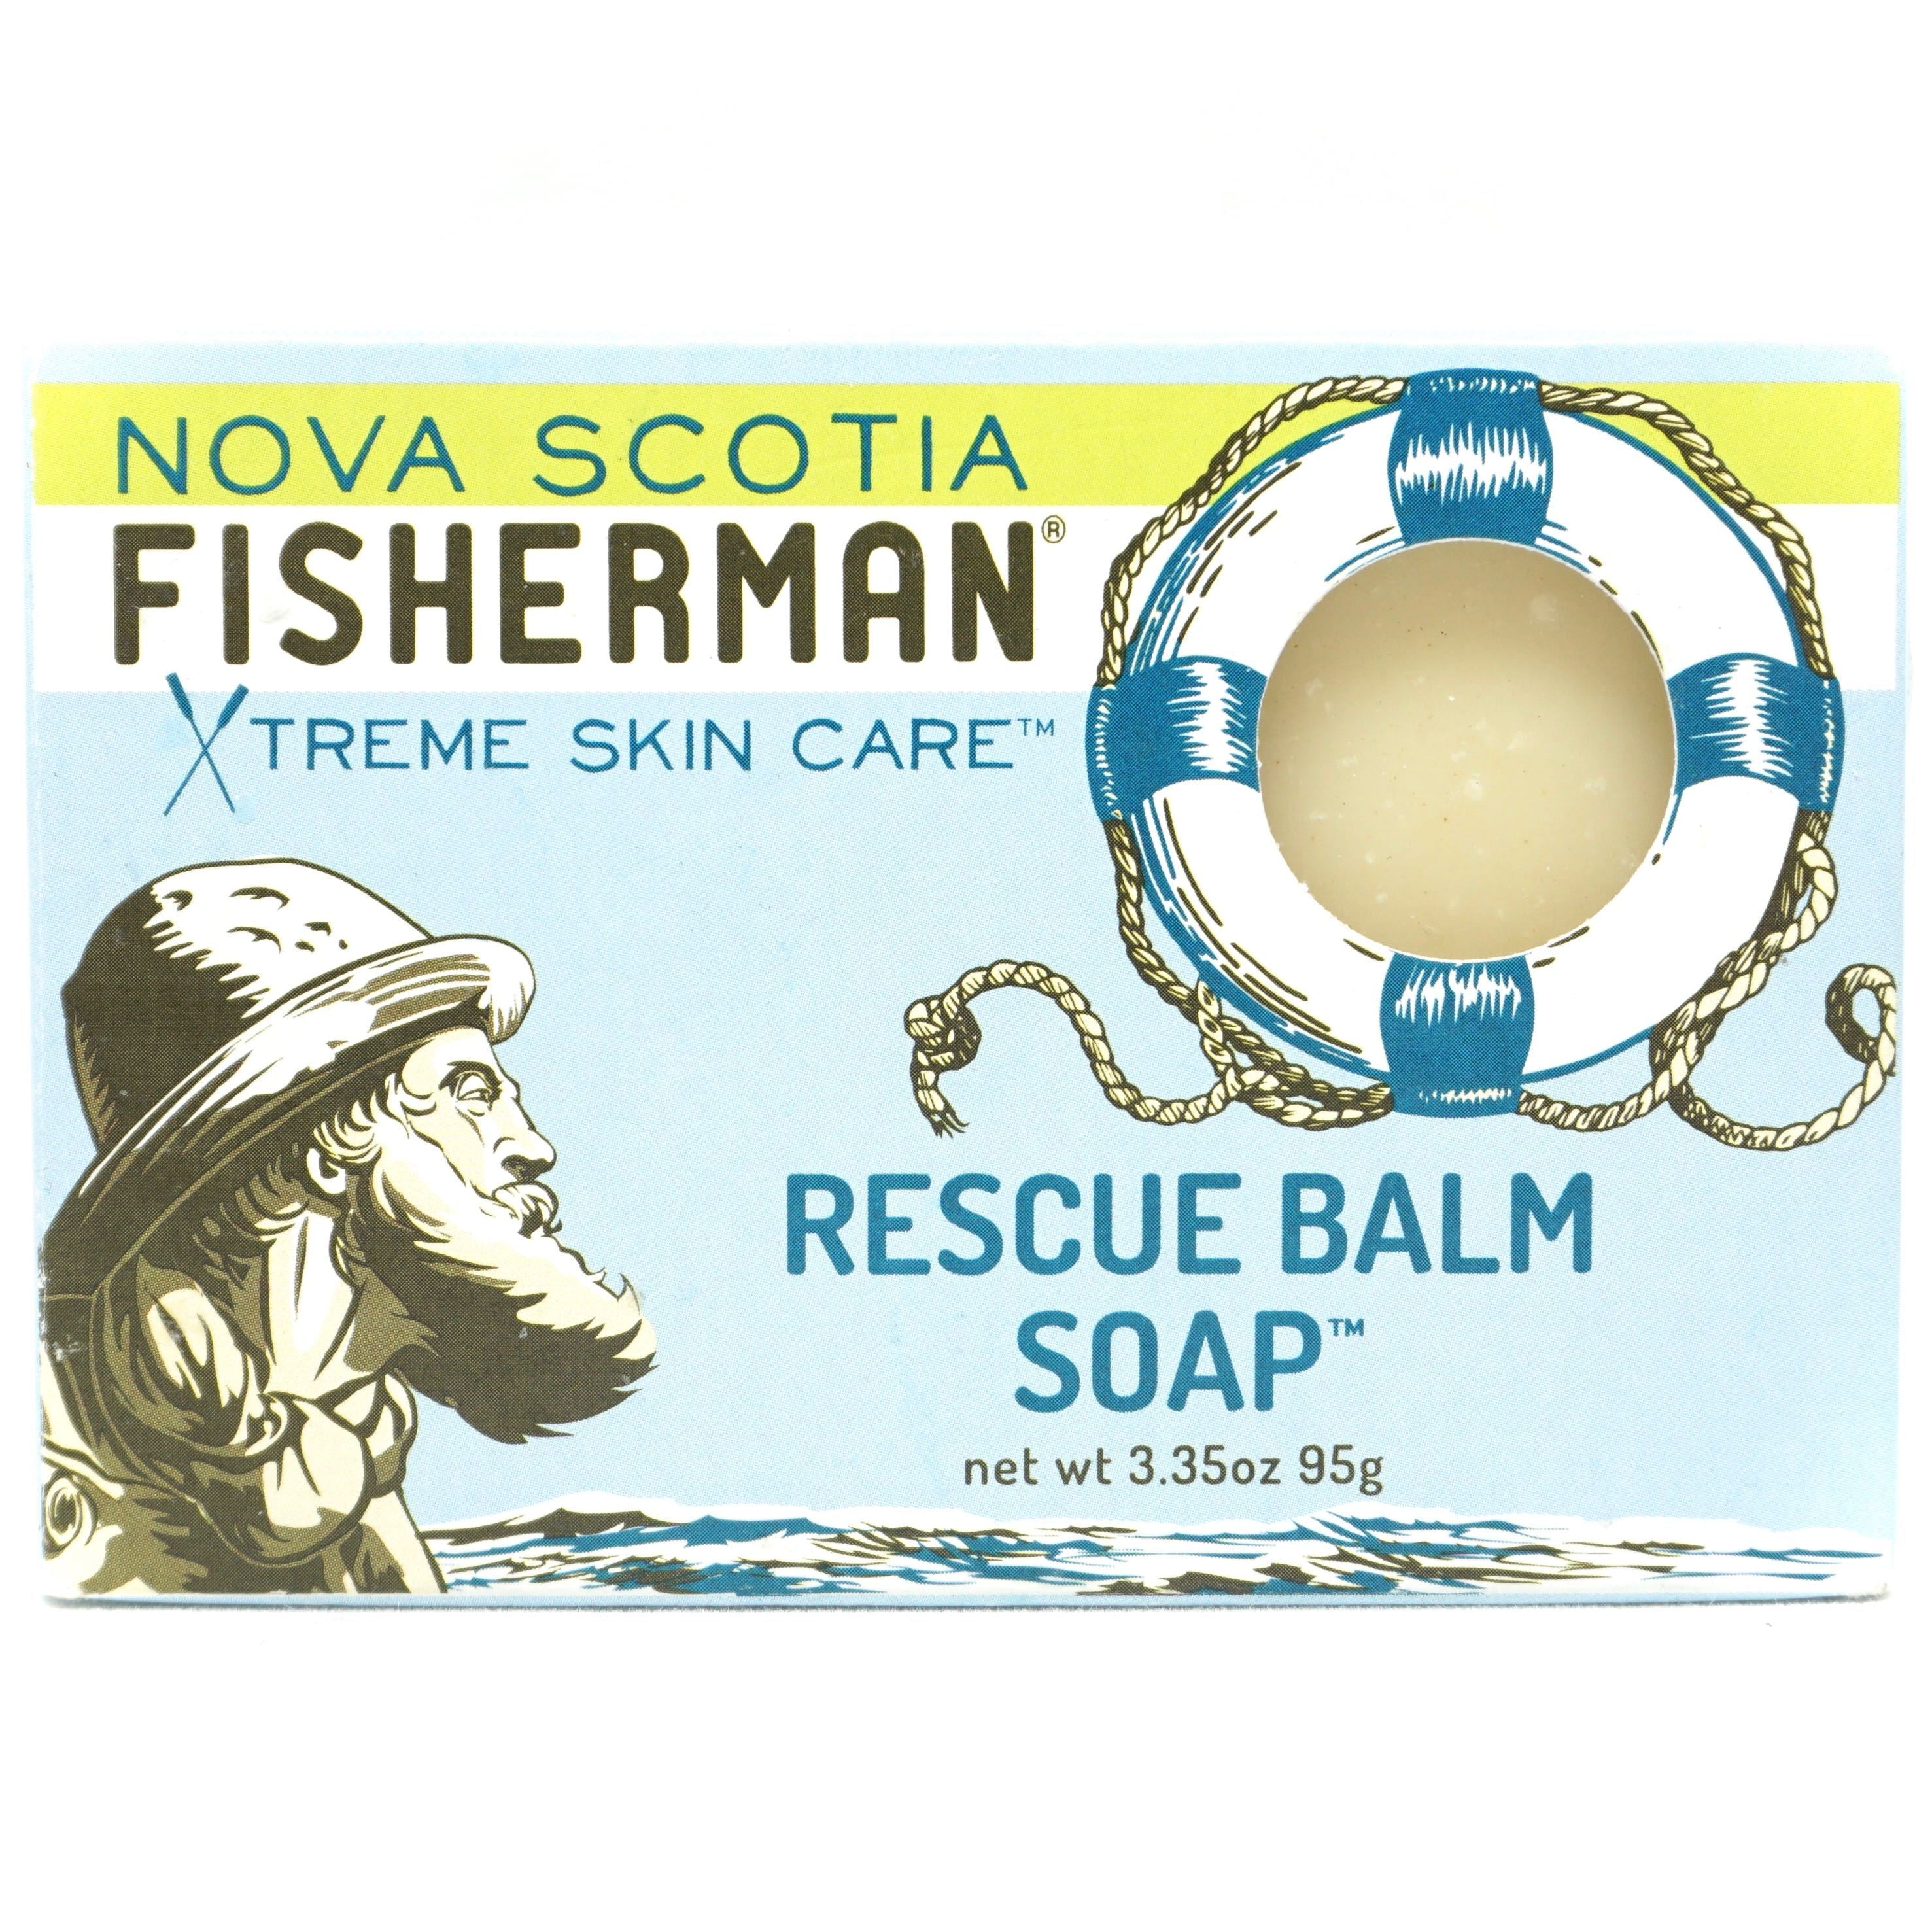 Savon soins extrème de la peau - Nova Scotia Fisherman